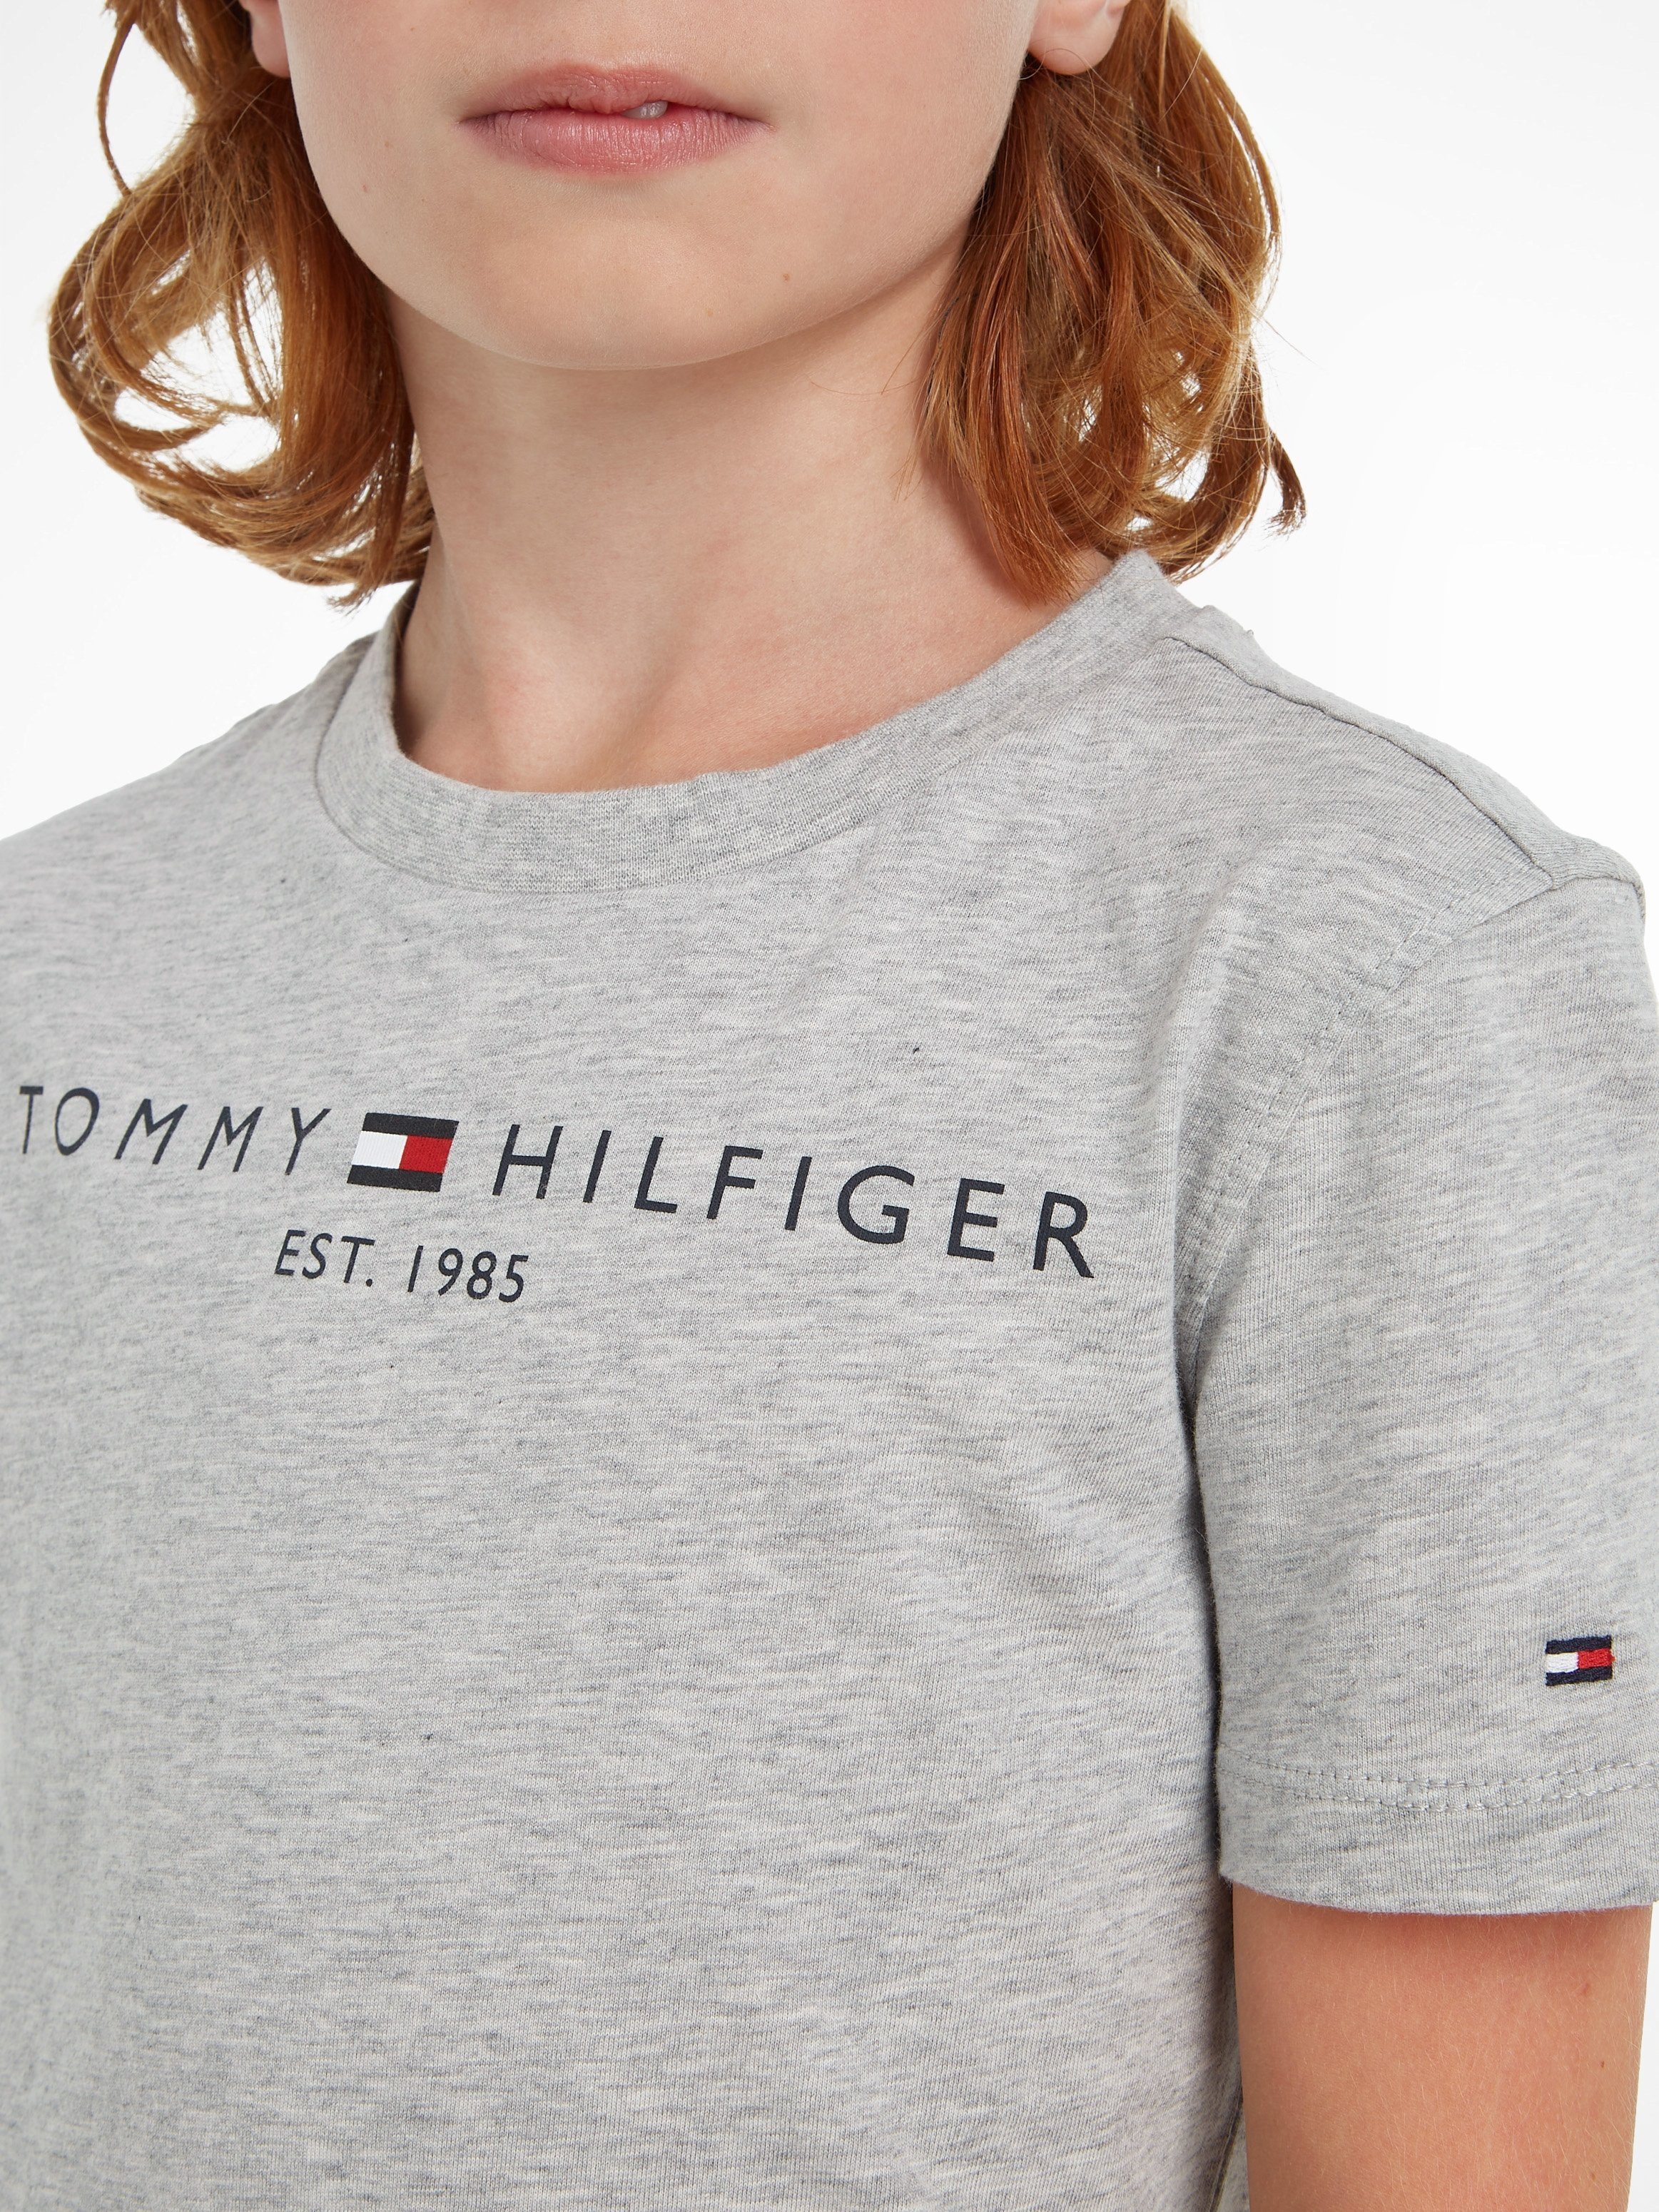 Tommy Hilfiger T-Shirt Jungen und Kids Kinder TEE ESSENTIAL Junior Mädchen MiniMe,für